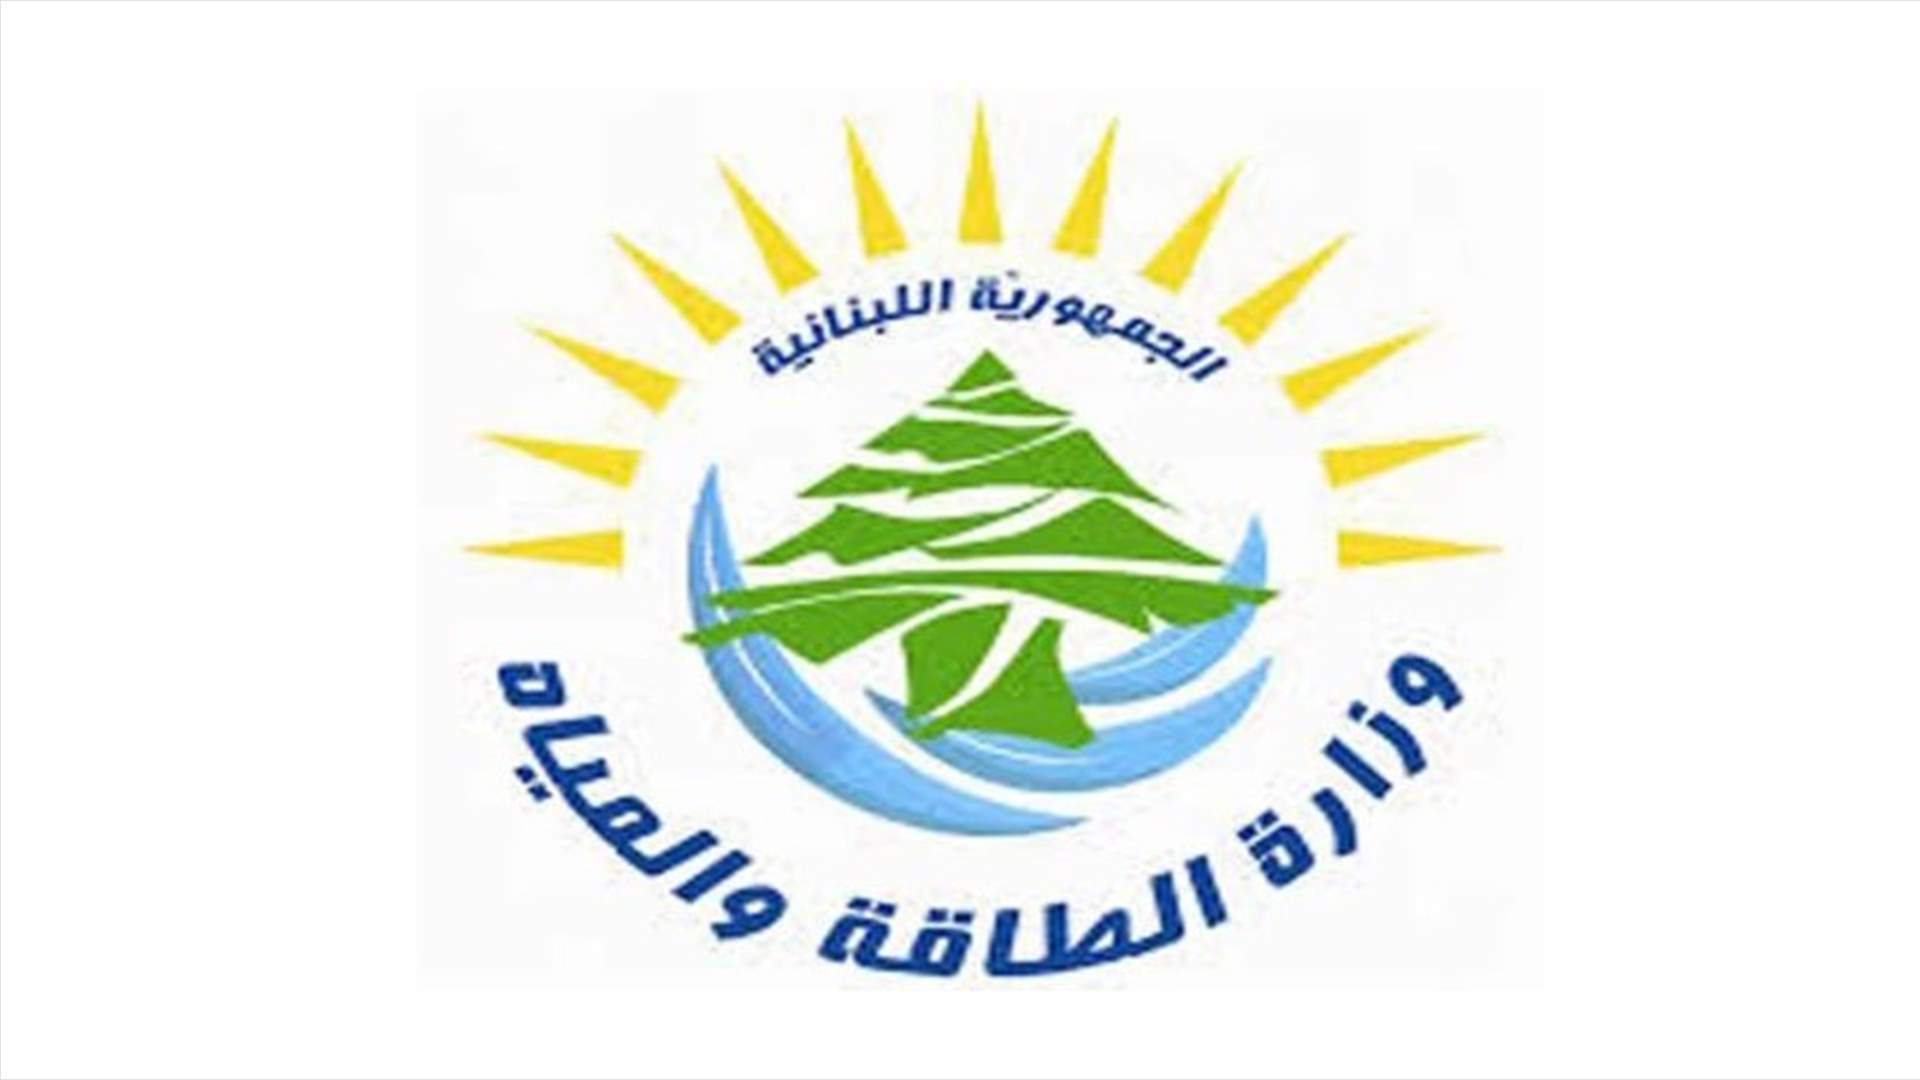 وزارة الطاقة: اطلاق مسار تعيين أعضاء مجلس ادارة مؤسسة كهرباء لبنان على اساس الكفاءة